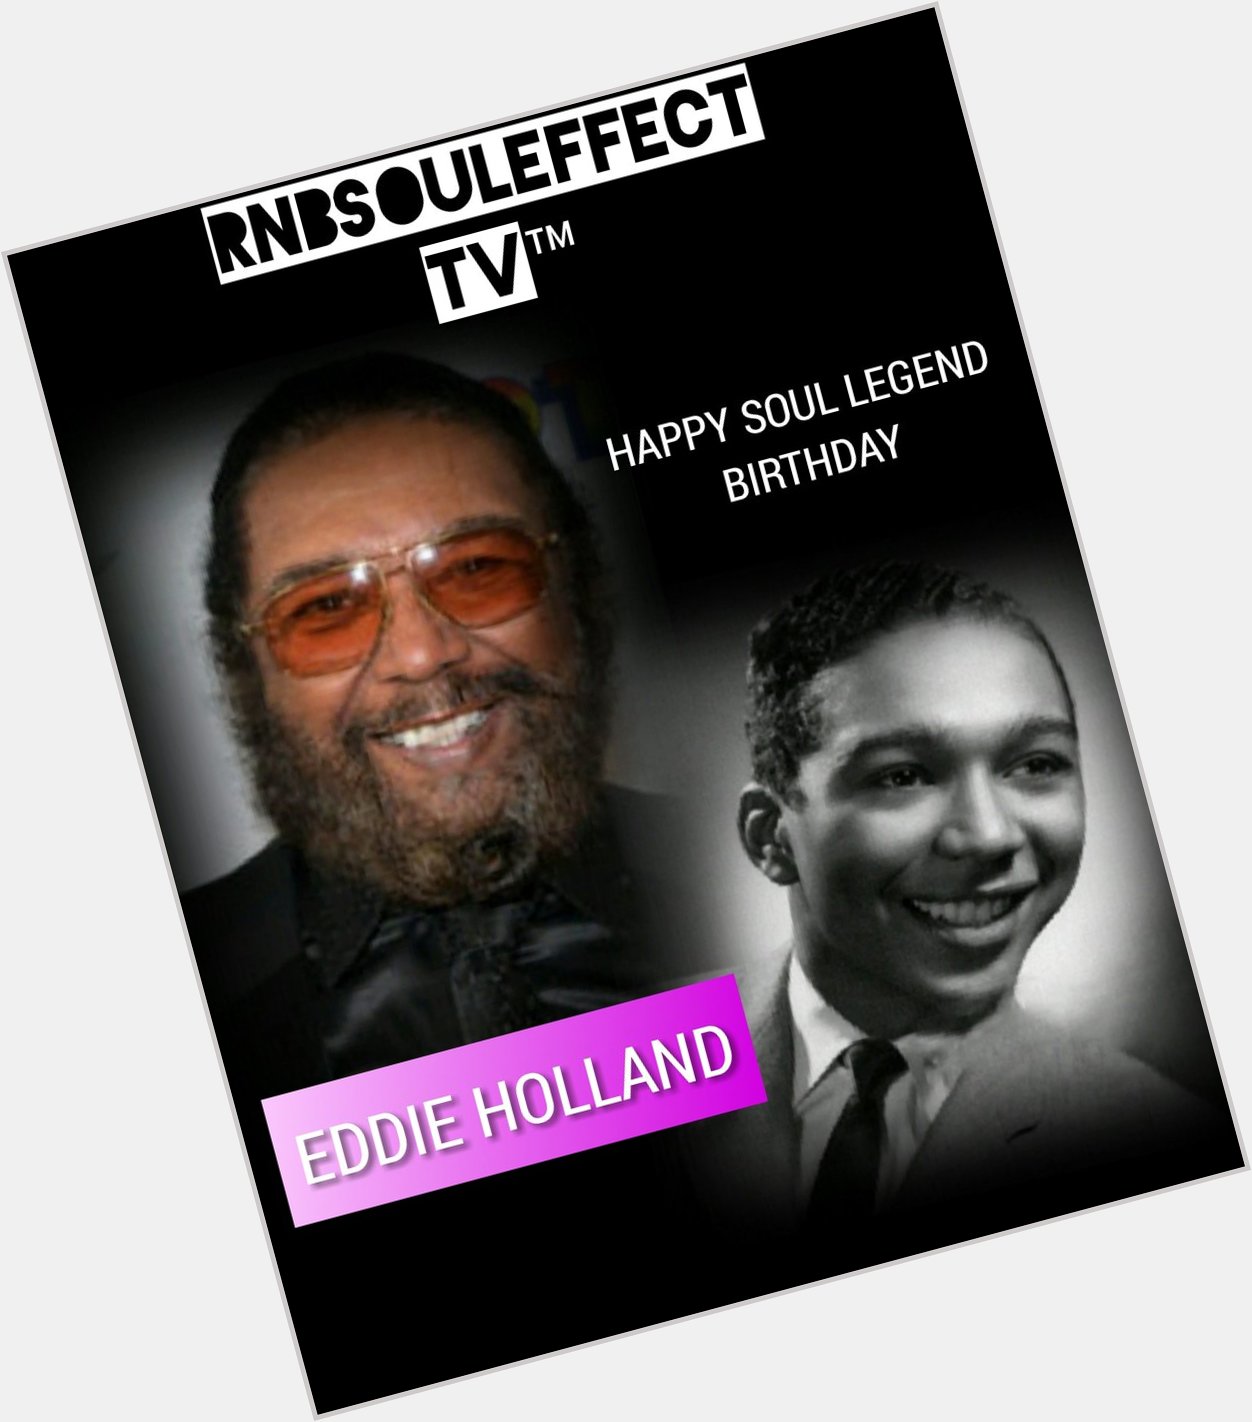 Happy Soul Legend Birthday Eddie Holland     